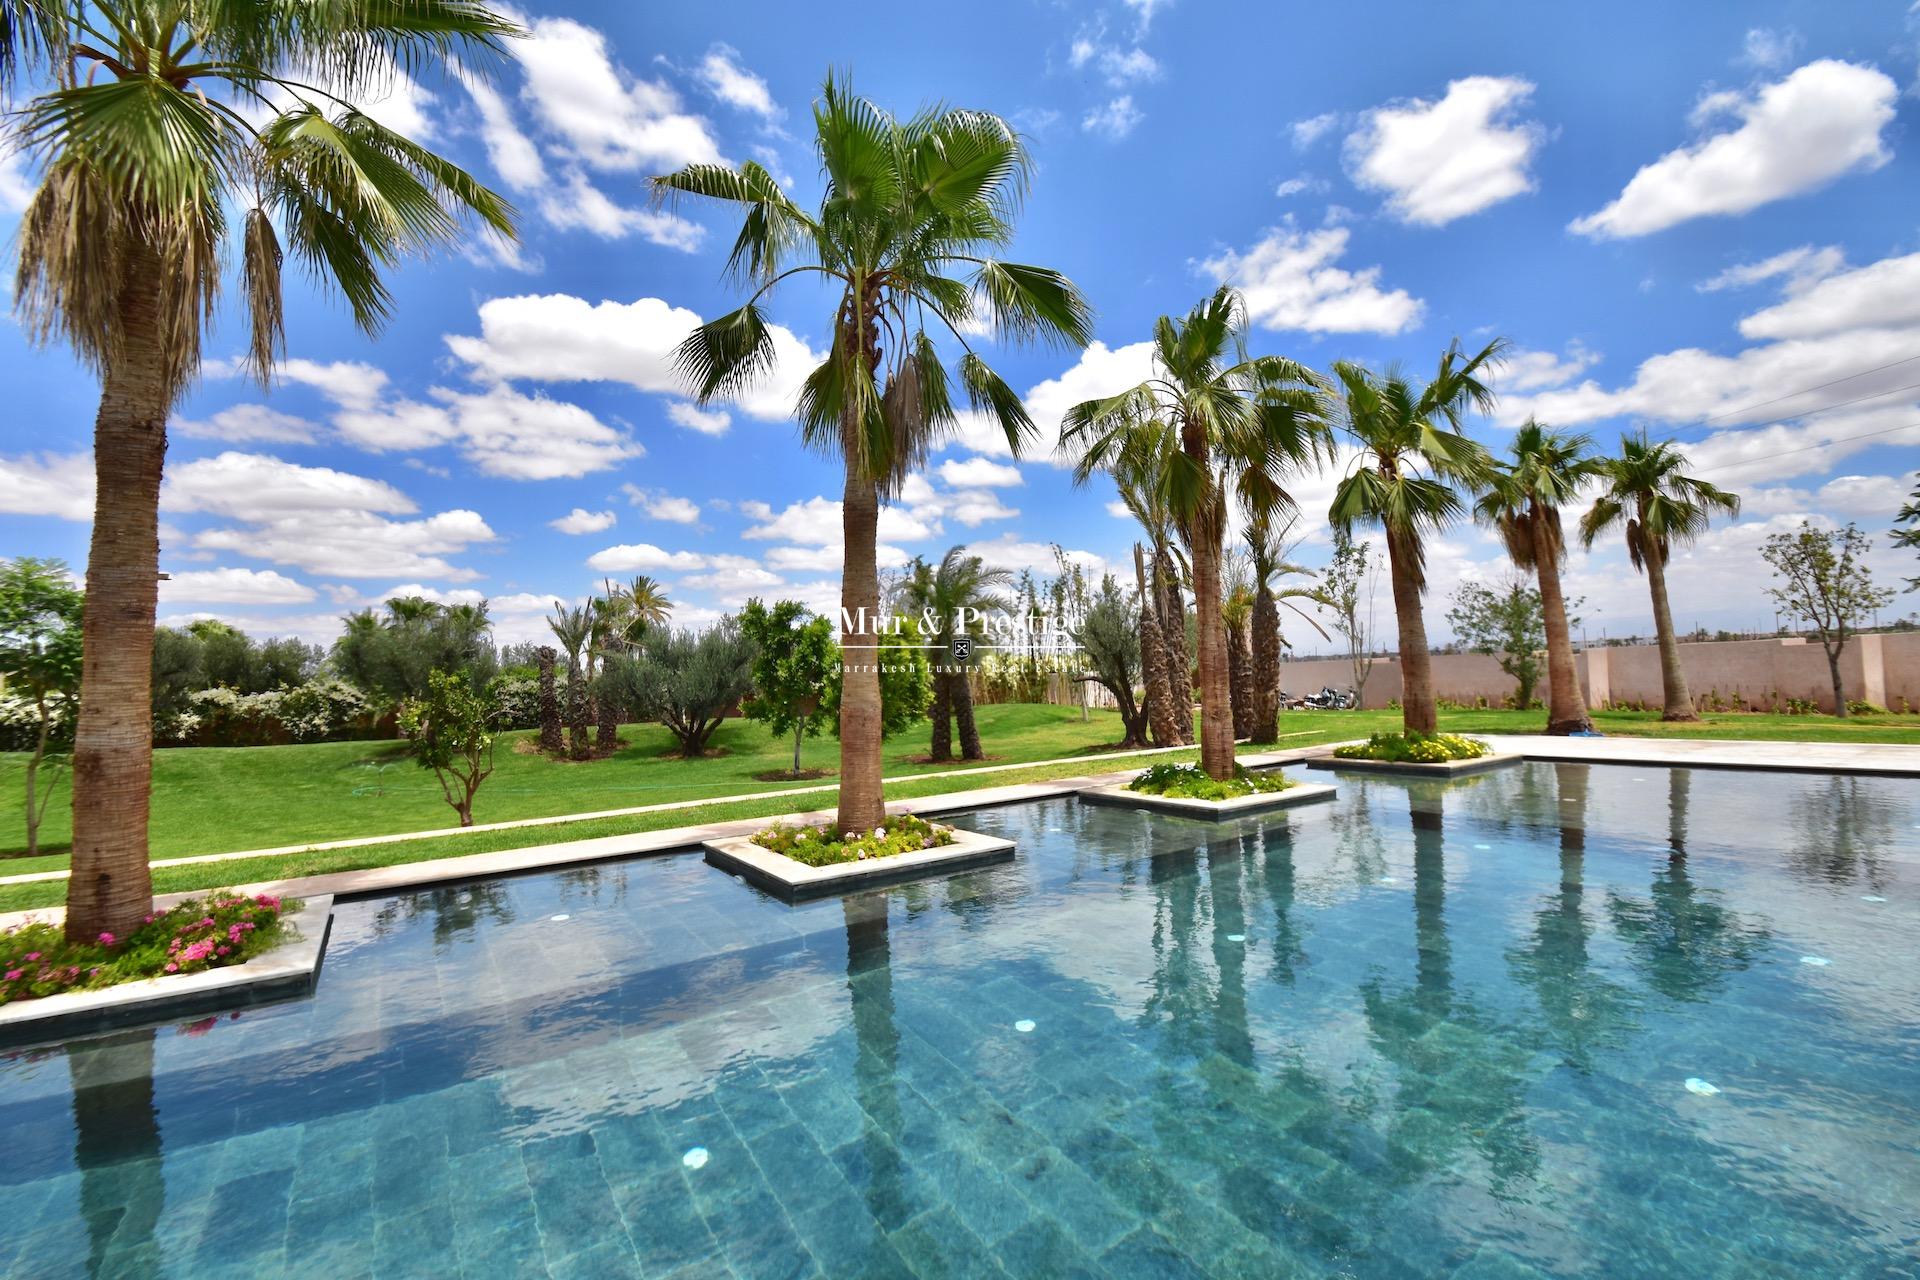 Vente villa de luxe à Marrakech - copie